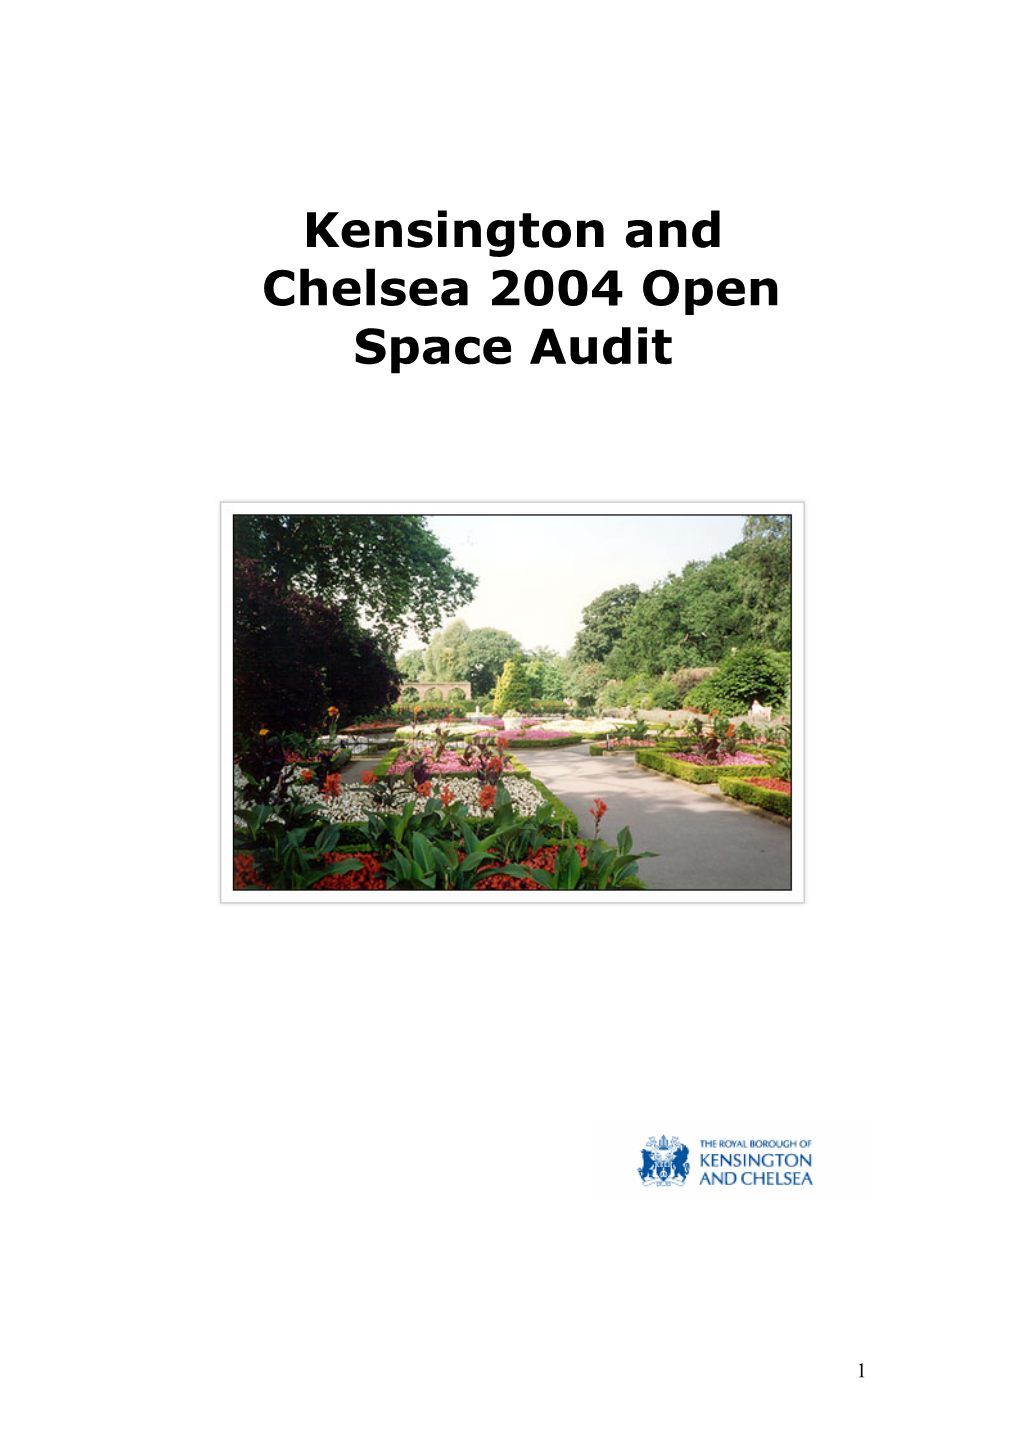 Open Spaces Audit 2004